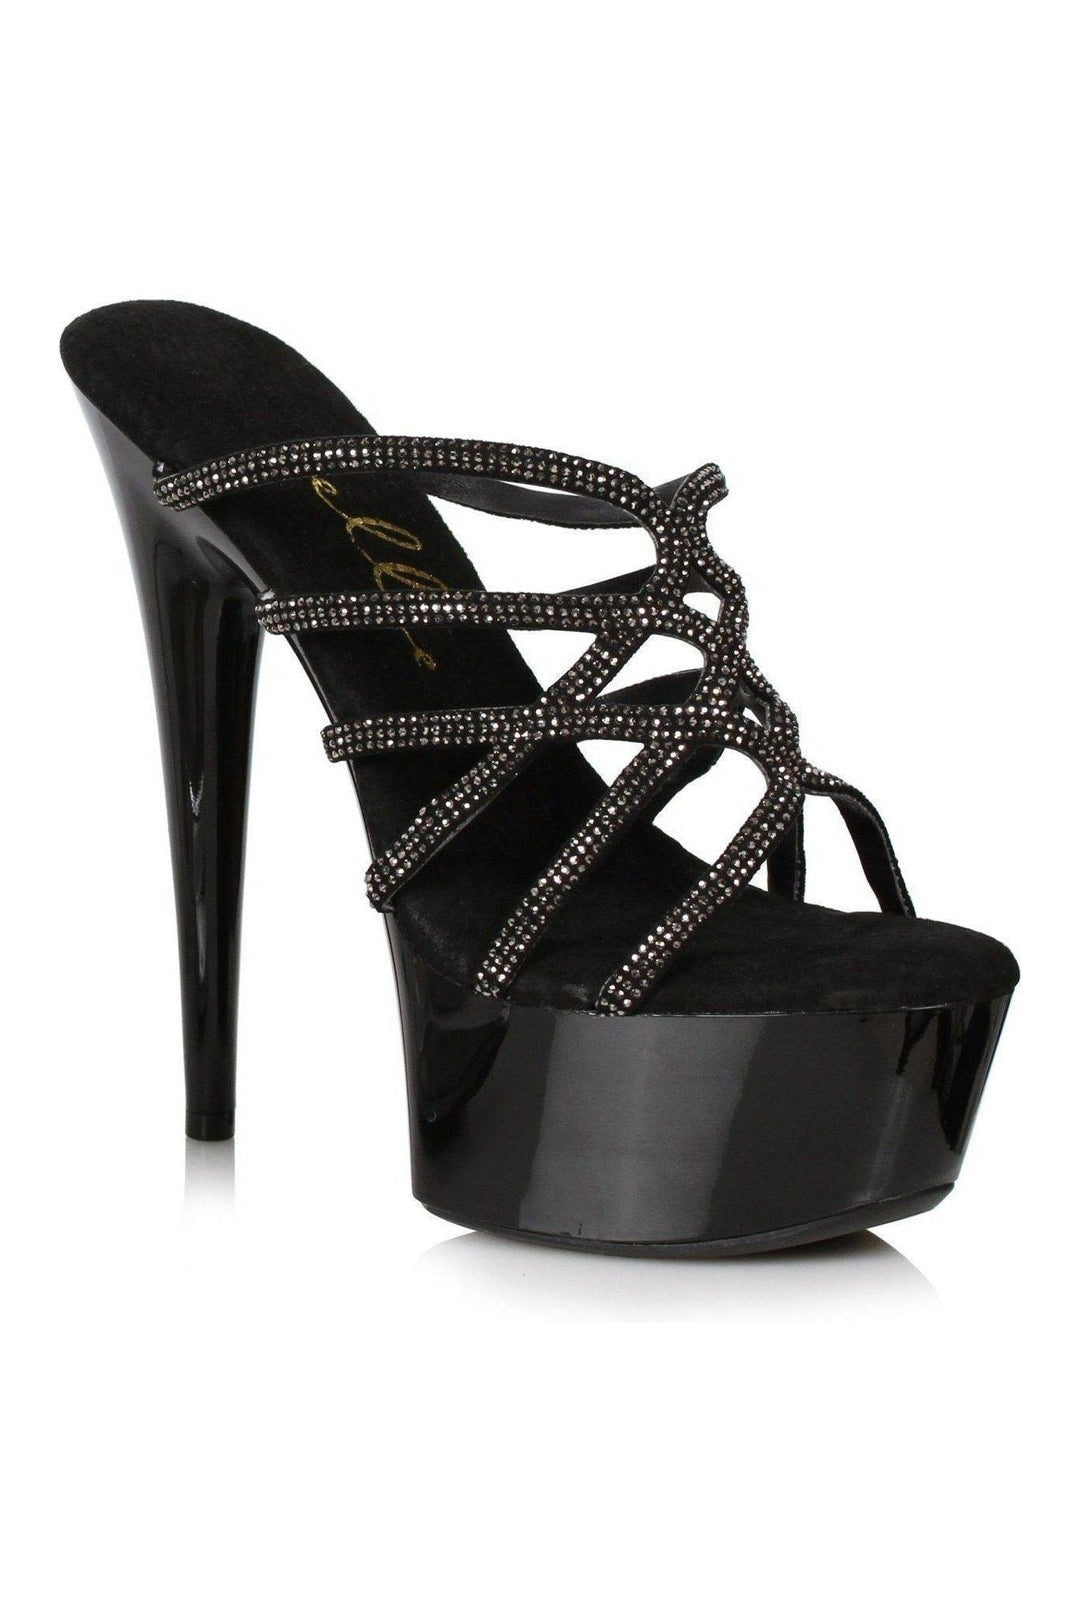 Ellie Shoes Black Slides Platform Stripper Shoes | Buy at Sexyshoes.com